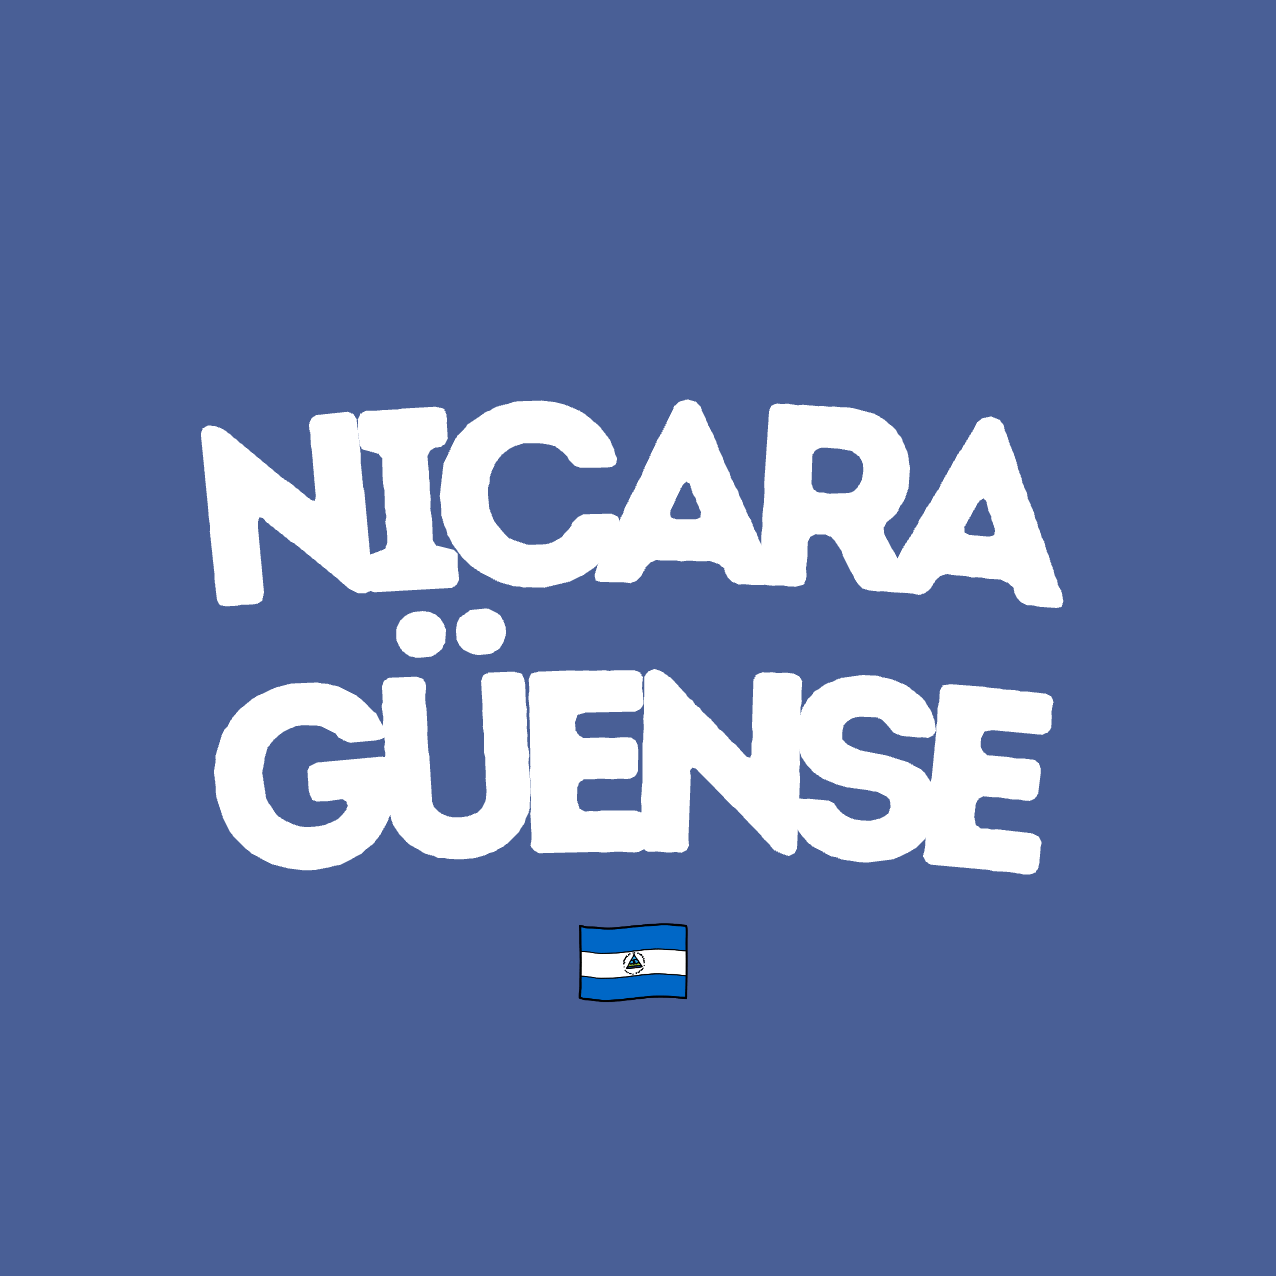 🇳🇮 Nicaraguense